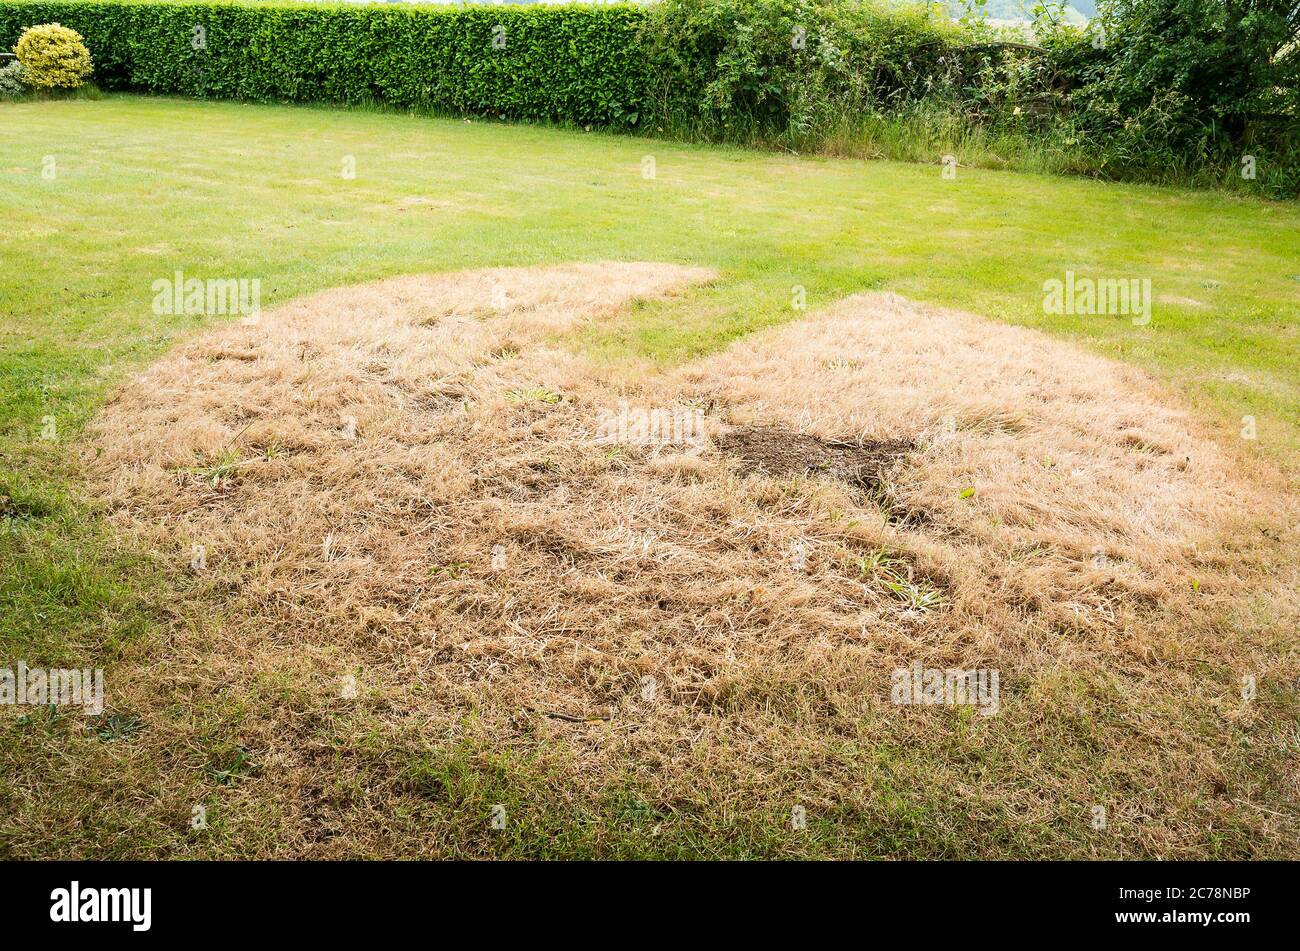 Les jonquilles naturalisés sont morts et la pelouse remterre, laissant une marque de conte de l'ancienne présence sur une pelouse dans un jardin anglais en juin Banque D'Images